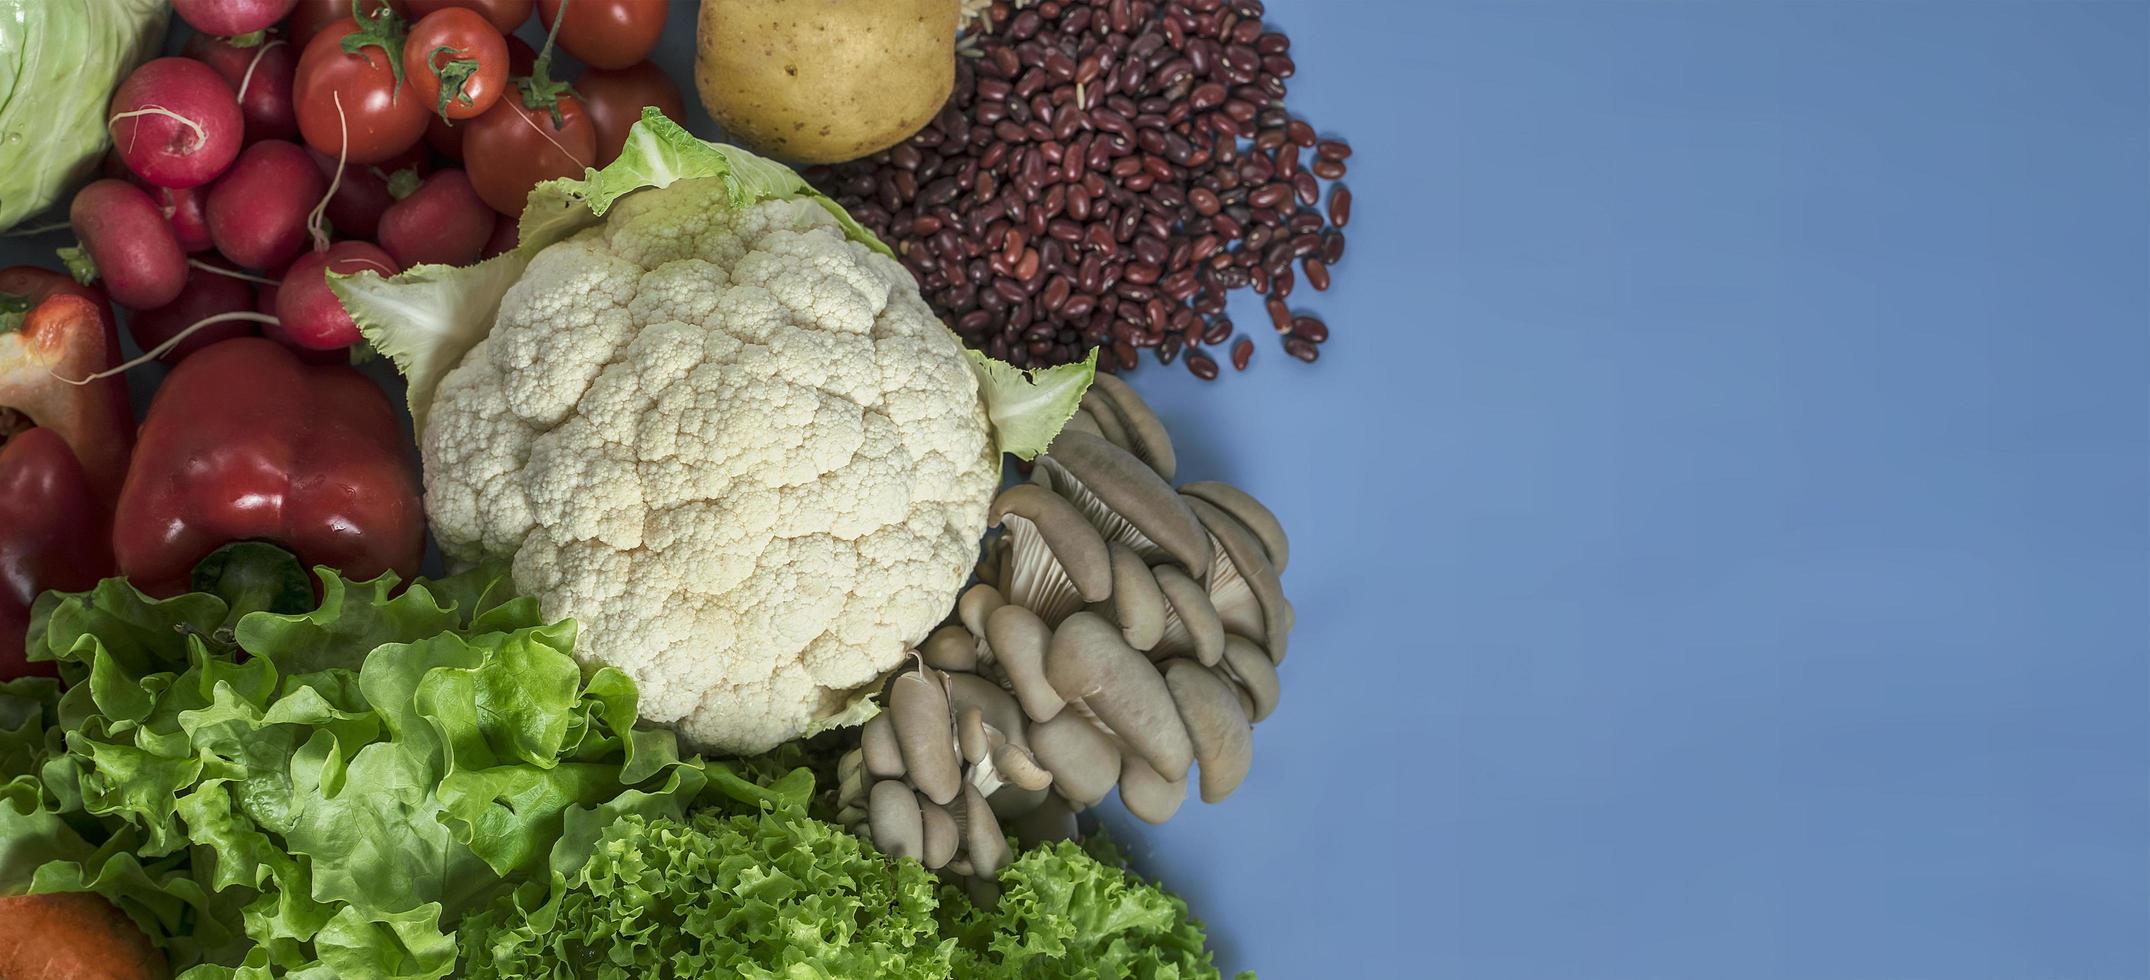 produtos para uma dieta desintoxicante vegetariana de couve-flor, alface, rabanete, tomate, cogumelos, feijão e pimentão vermelho sobre fundo azul foto